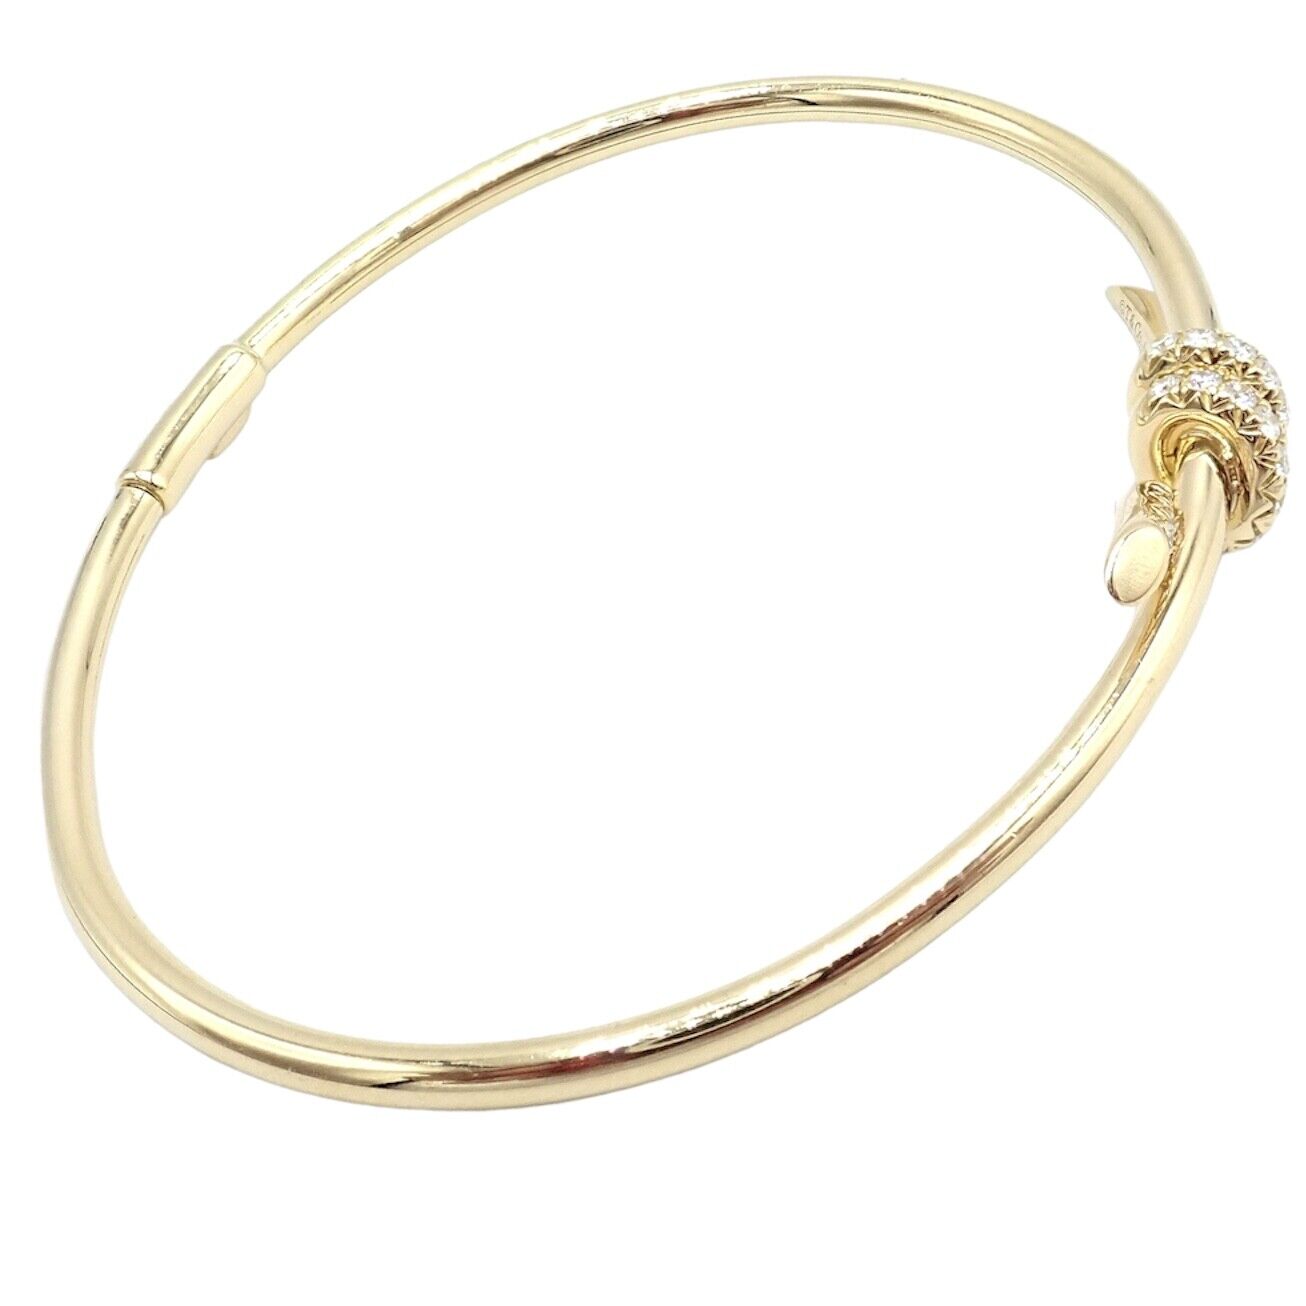 Tiffany & Co. Jewelry & Watches:Fine Jewelry:Bracelets & Charms Authentic! Tiffany & Co 18k Yellow Gold Diamond Knot Bangle Bracelet